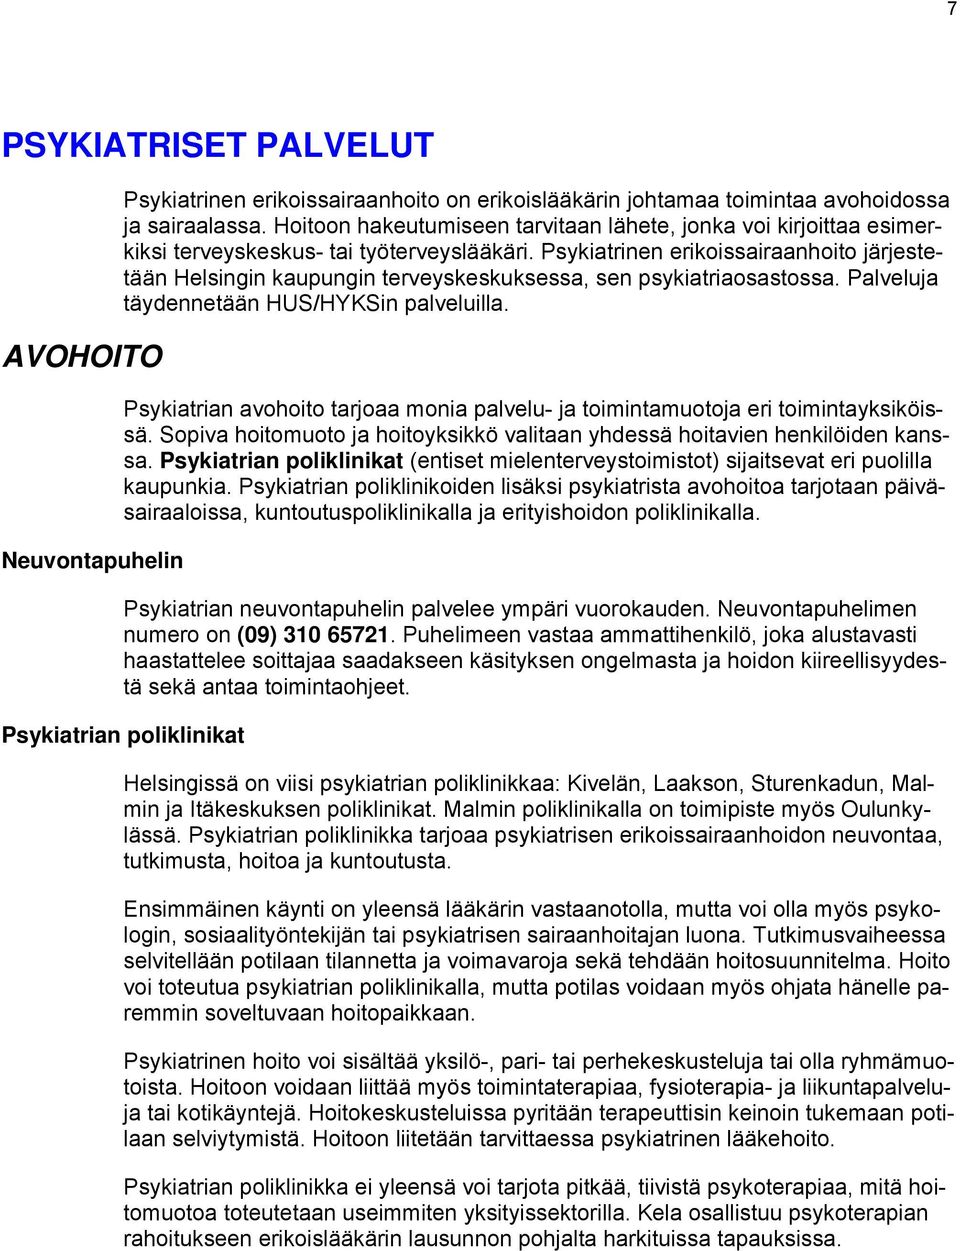 Psykiatrinen erikoissairaanhoito järjestetään Helsingin kaupungin terveyskeskuksessa, sen psykiatriaosastossa. Palveluja täydennetään HUS/HYKSin palveluilla.